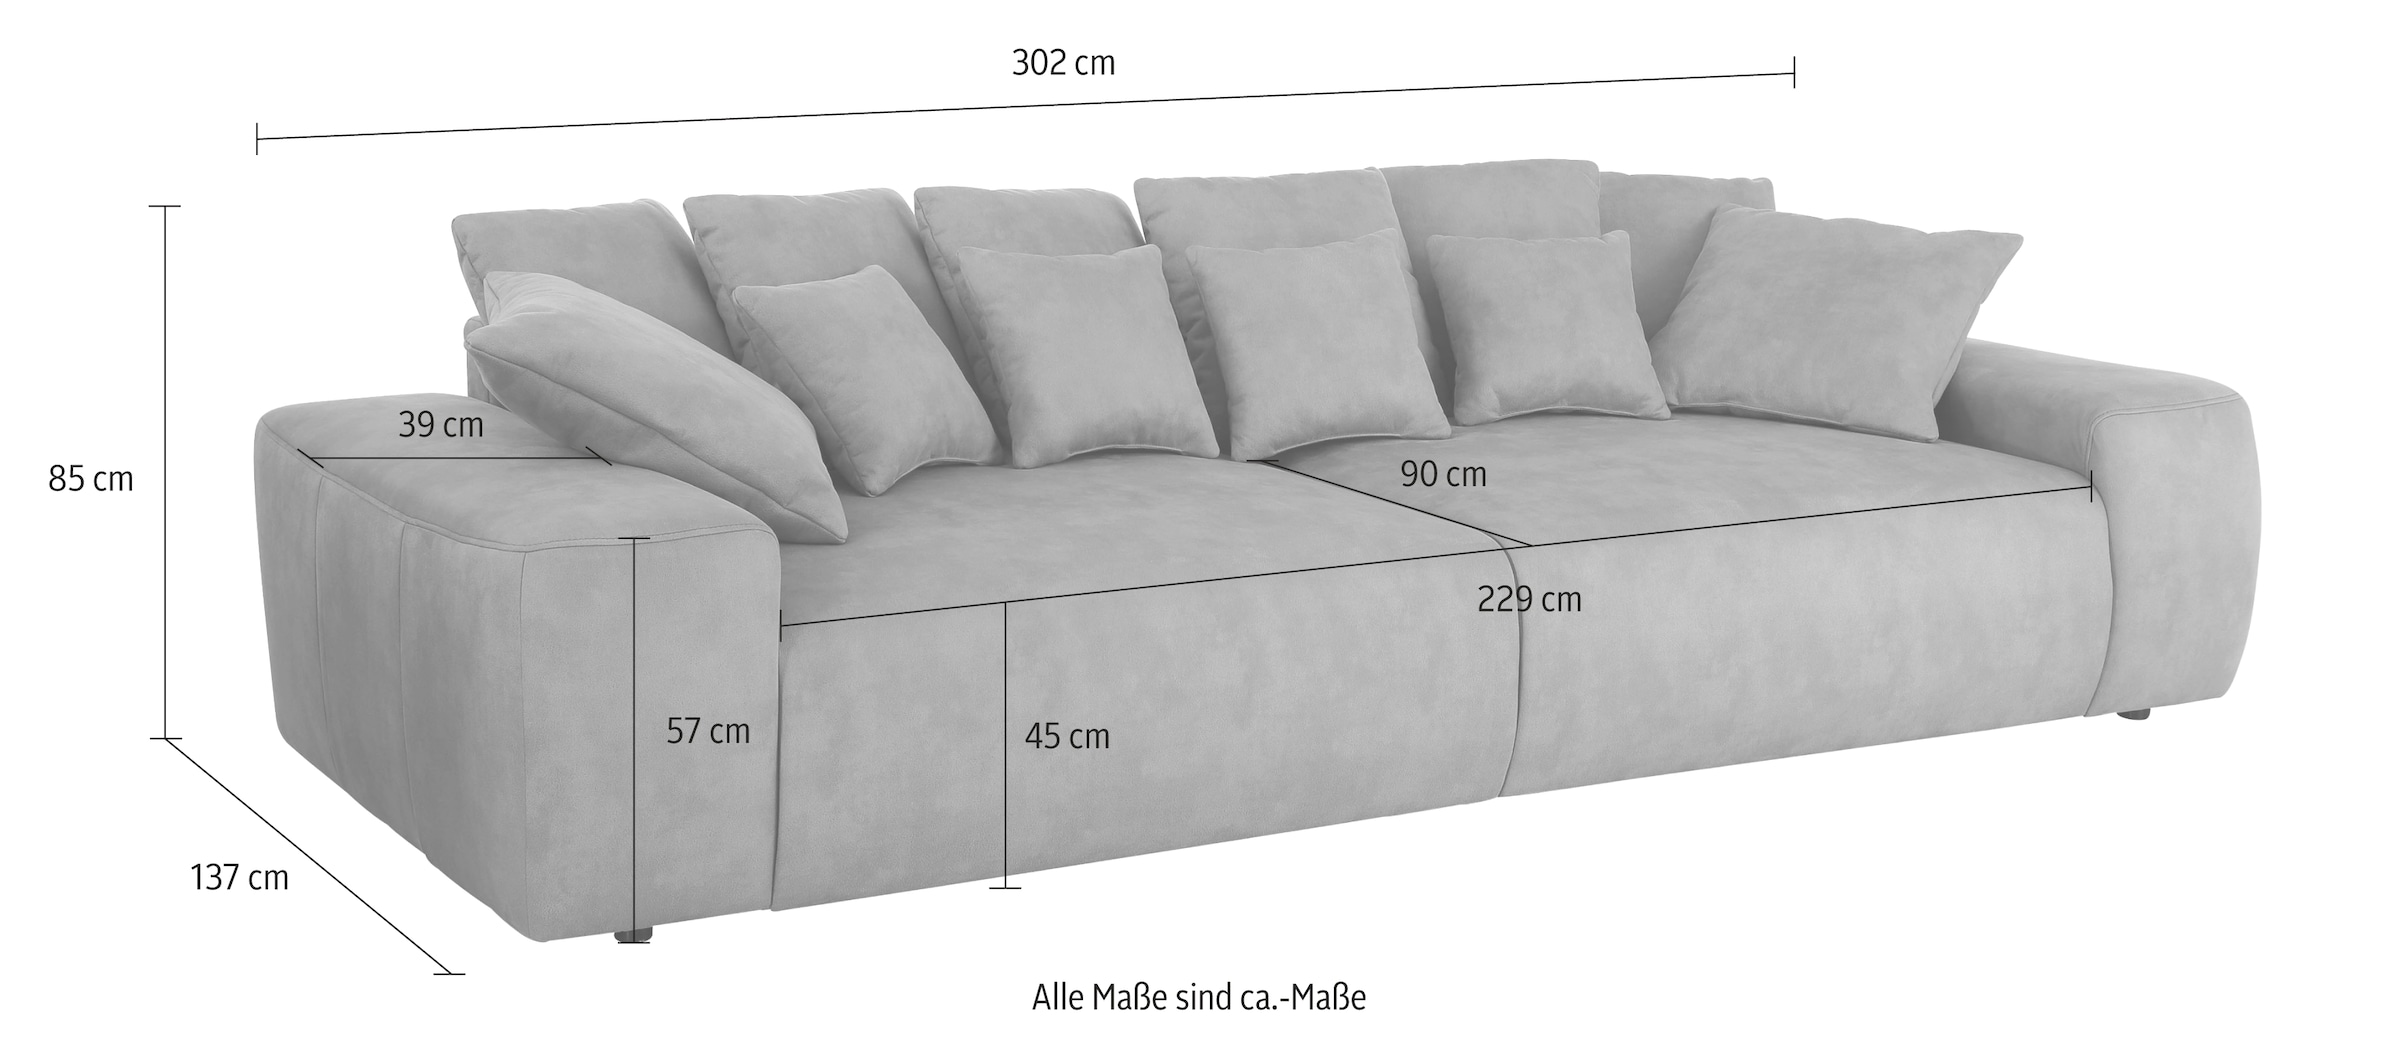 Home affaire Big-Sofa »Riveo«, mit vielen losen Breite Boxspringfederung, Lounge Sofa cm, 302 | kaufen BAUR Kissen